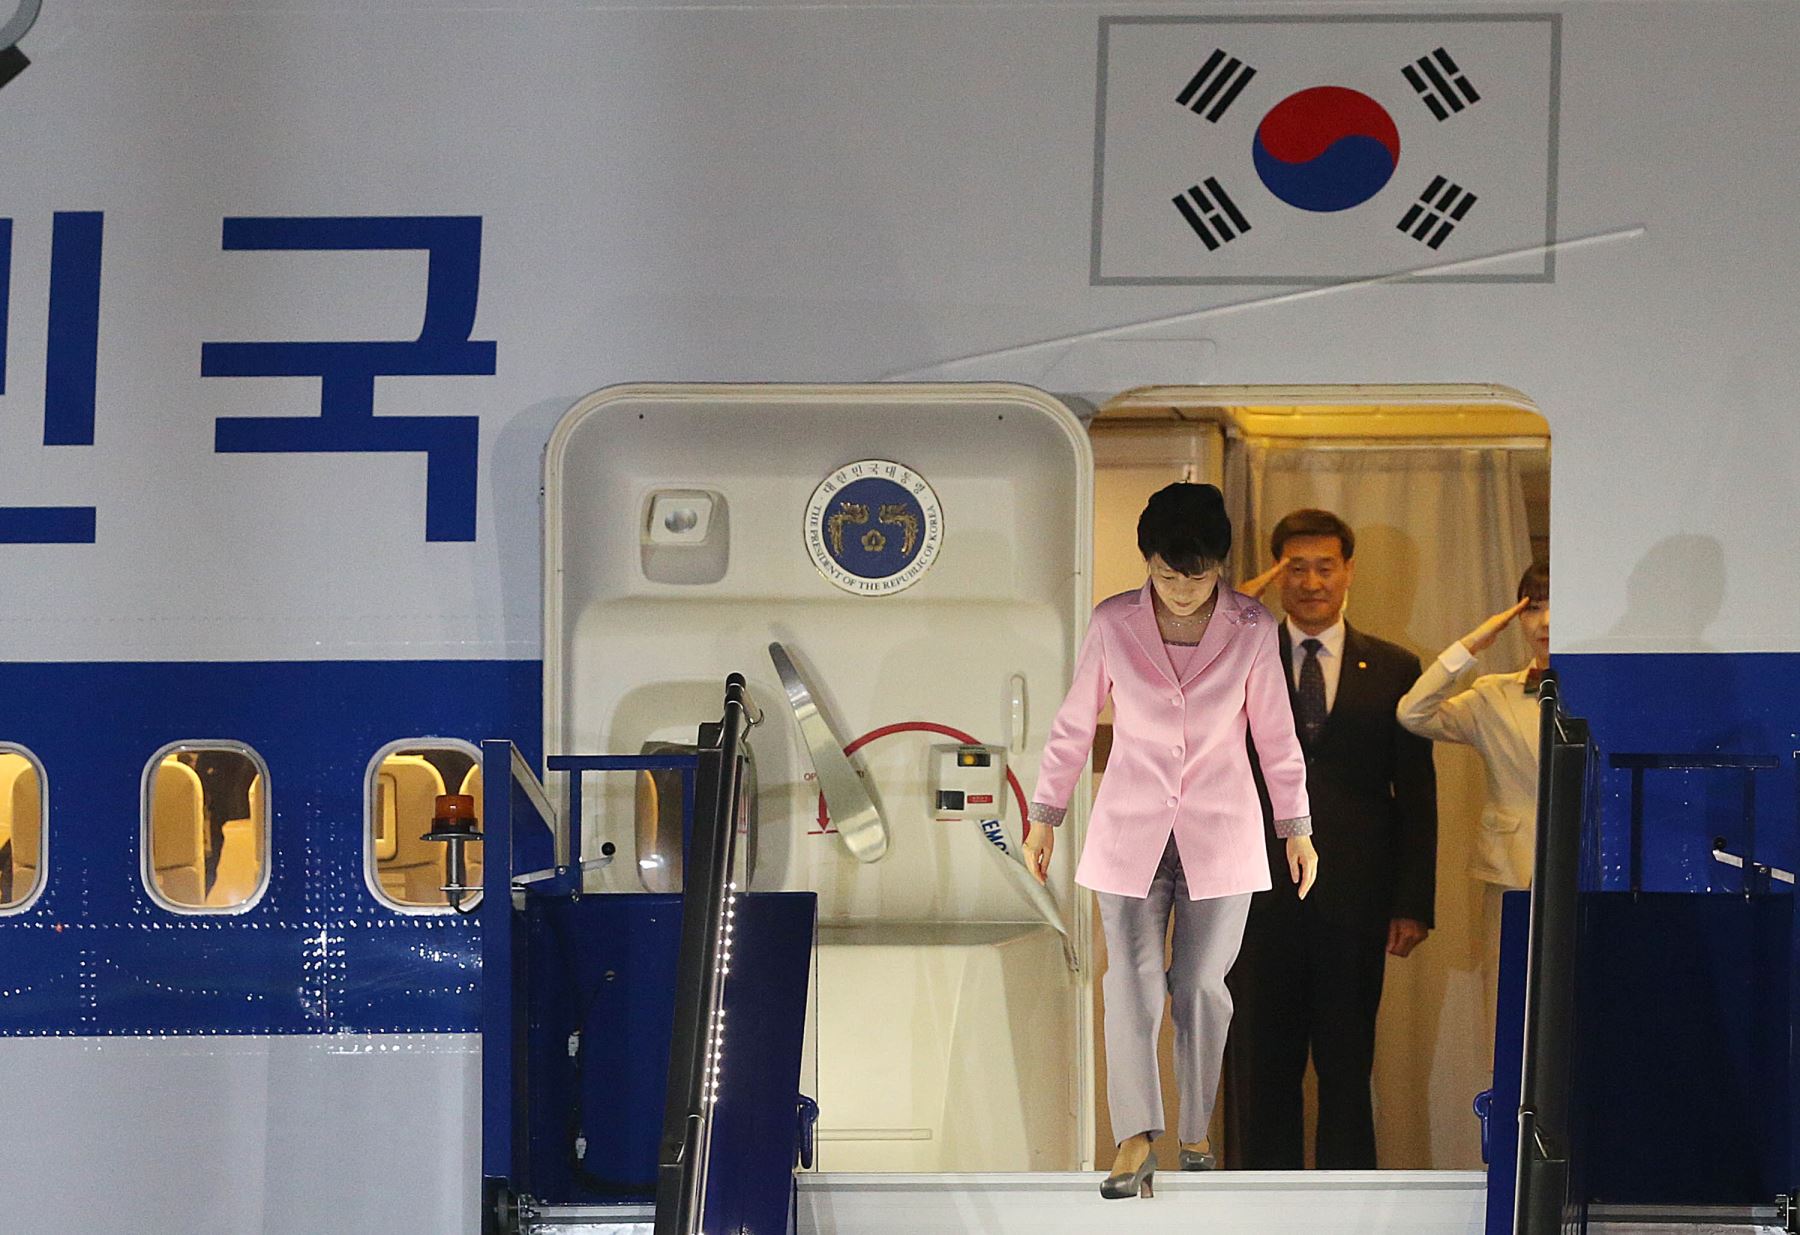 CALLAO,PERÚ - ABRIL 18. Llegada al Perú de la presidenta de Corea del Sur, Park Geun-hye.

Foto: ANDINA/Vidal Tarqui